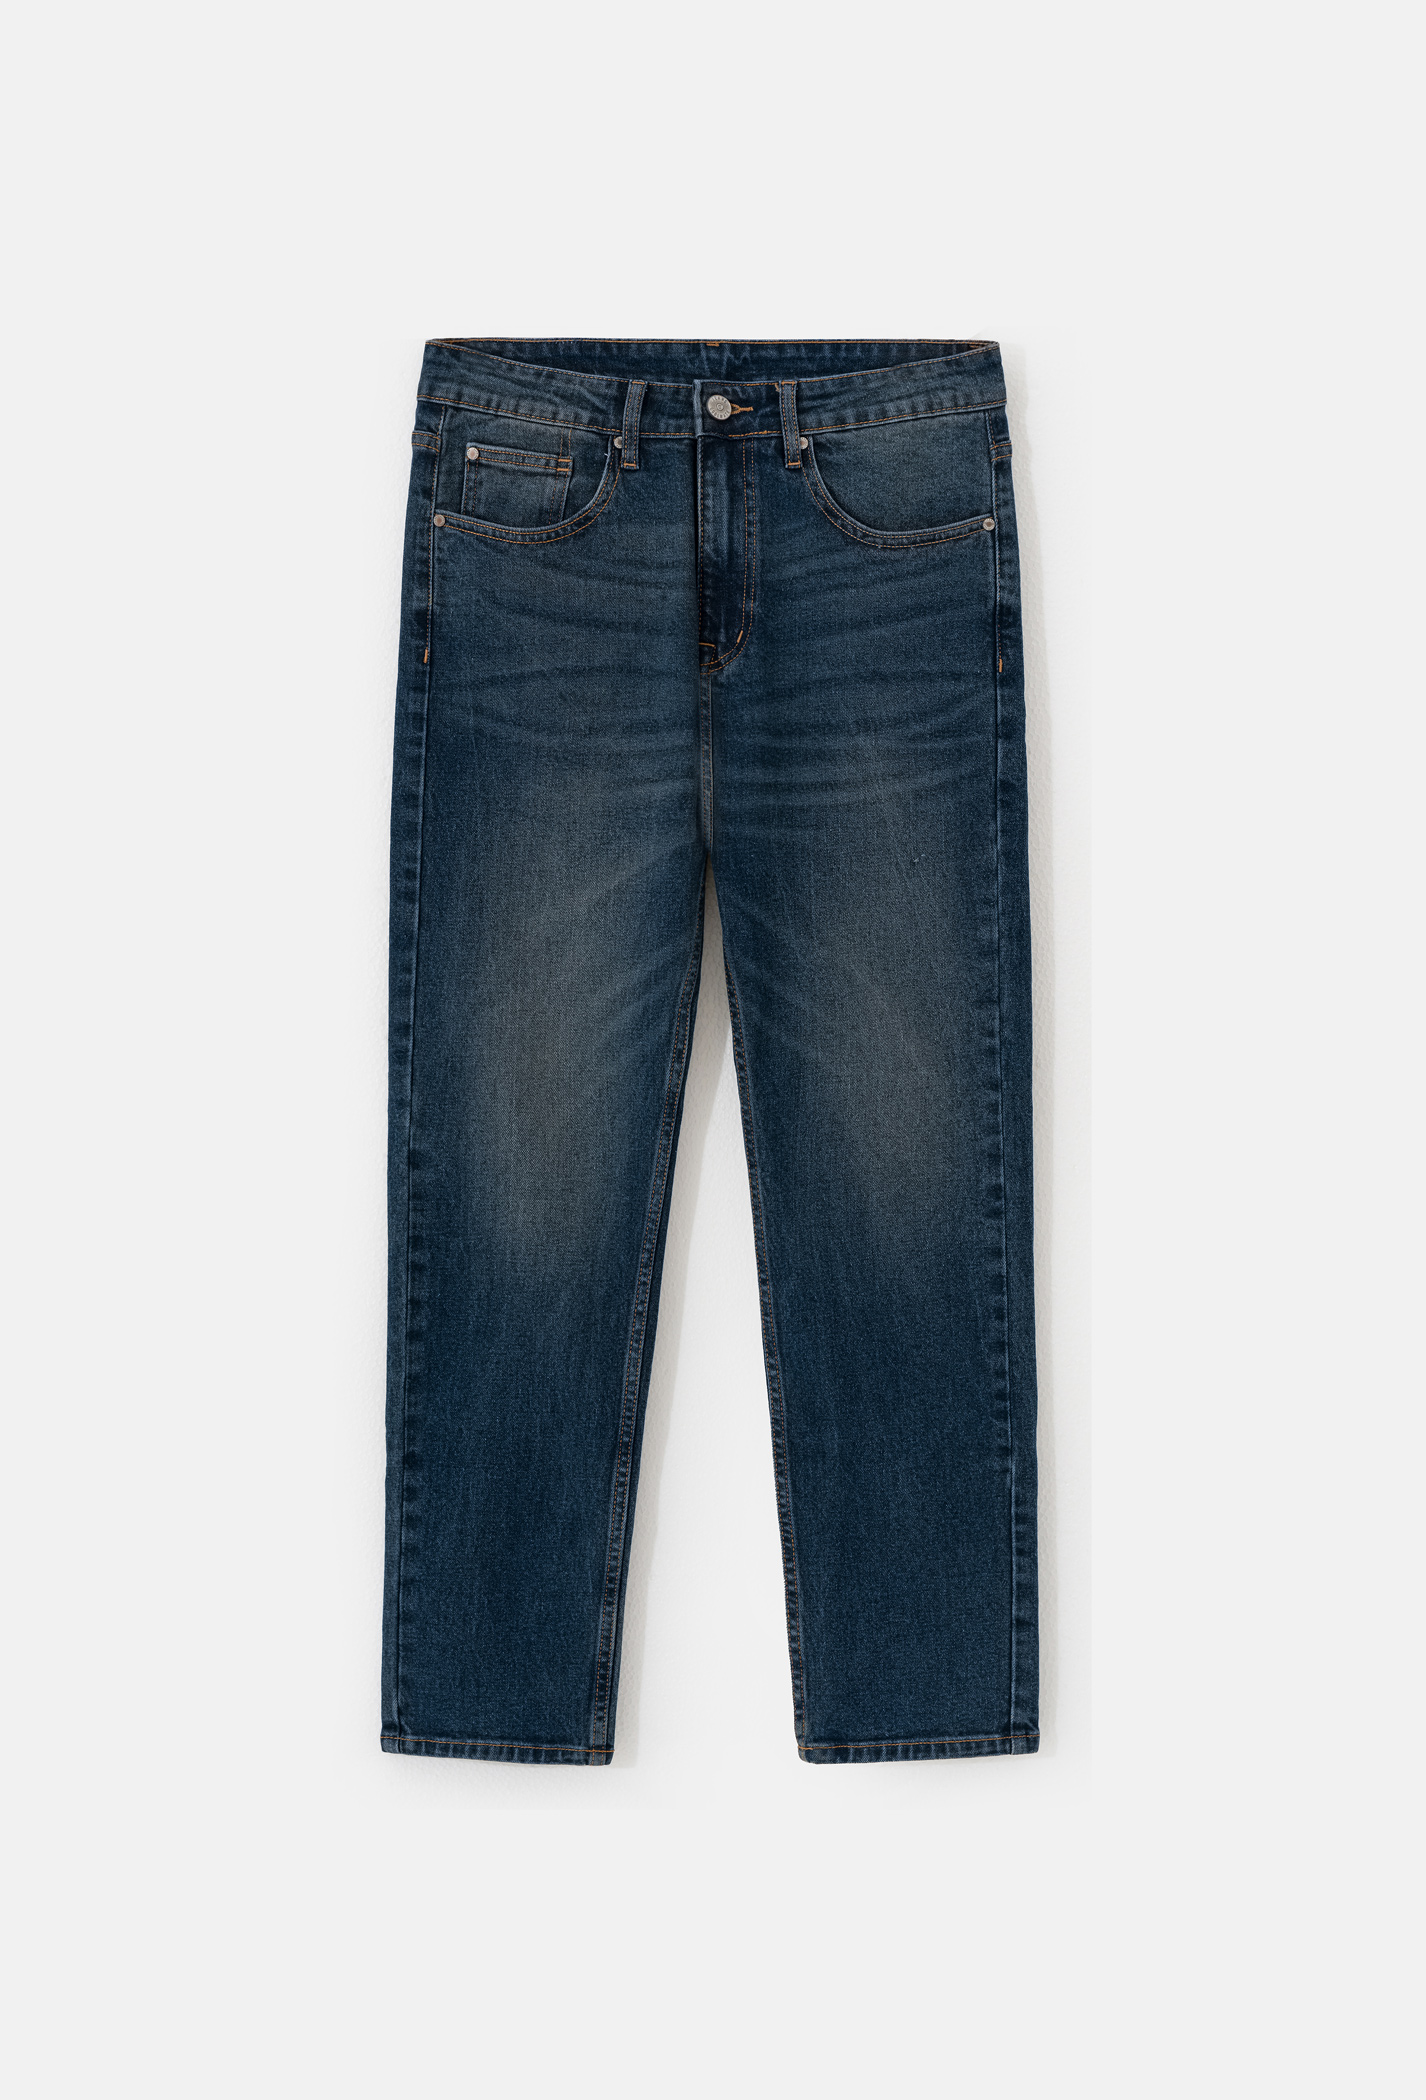 Quần Jeans Basic Regular Xanh đậm 1